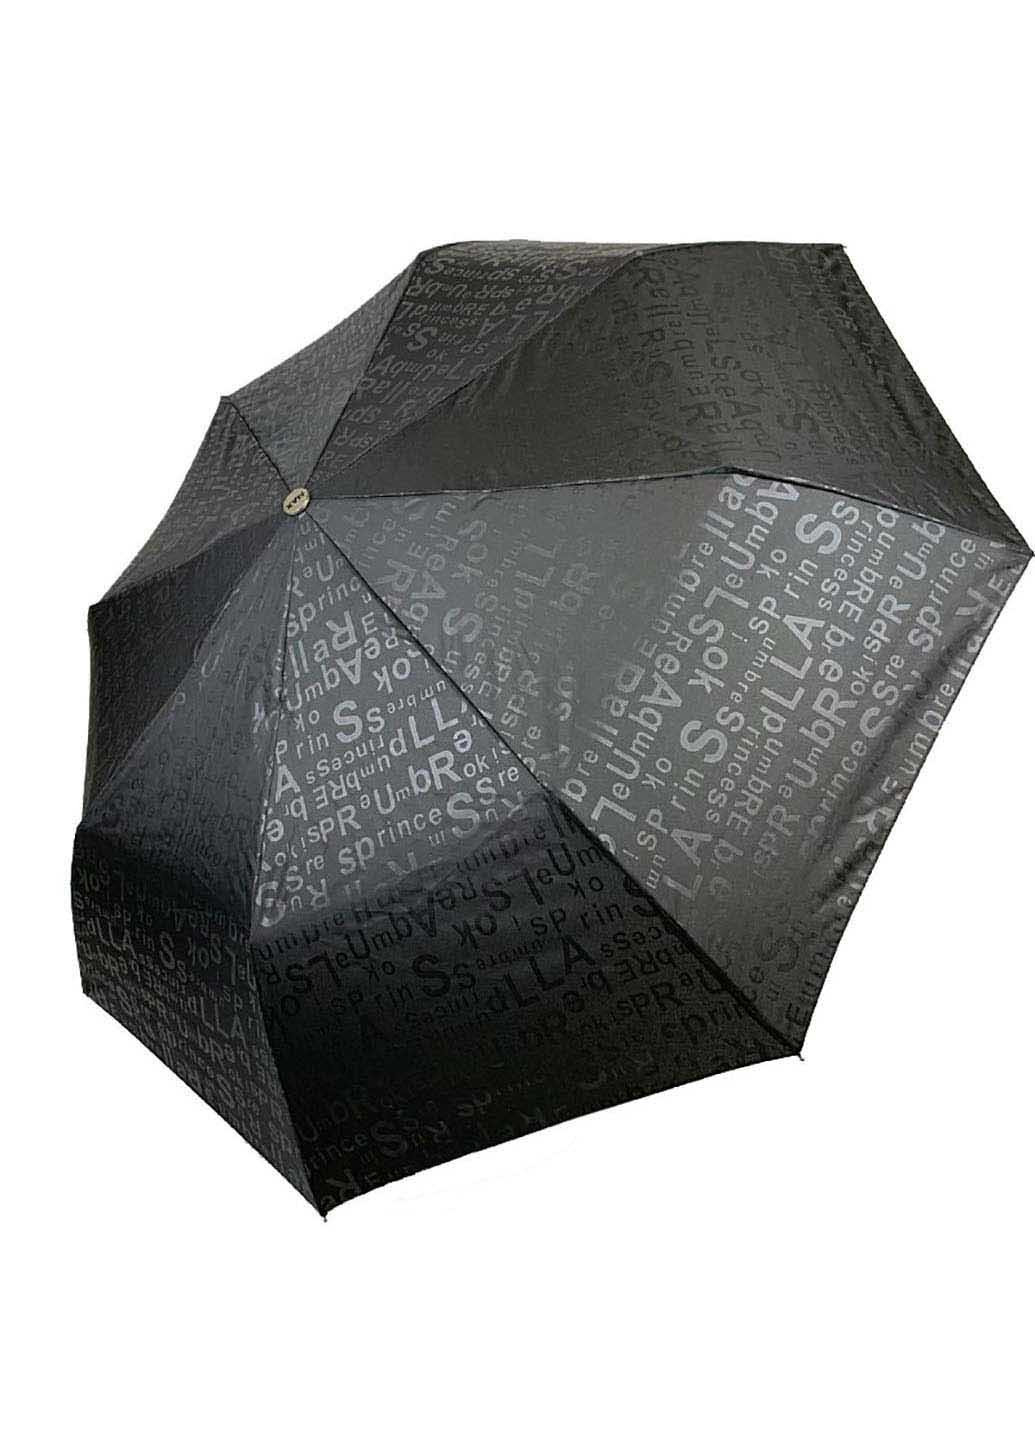 Зонт Max 2052-1 складной чёрный